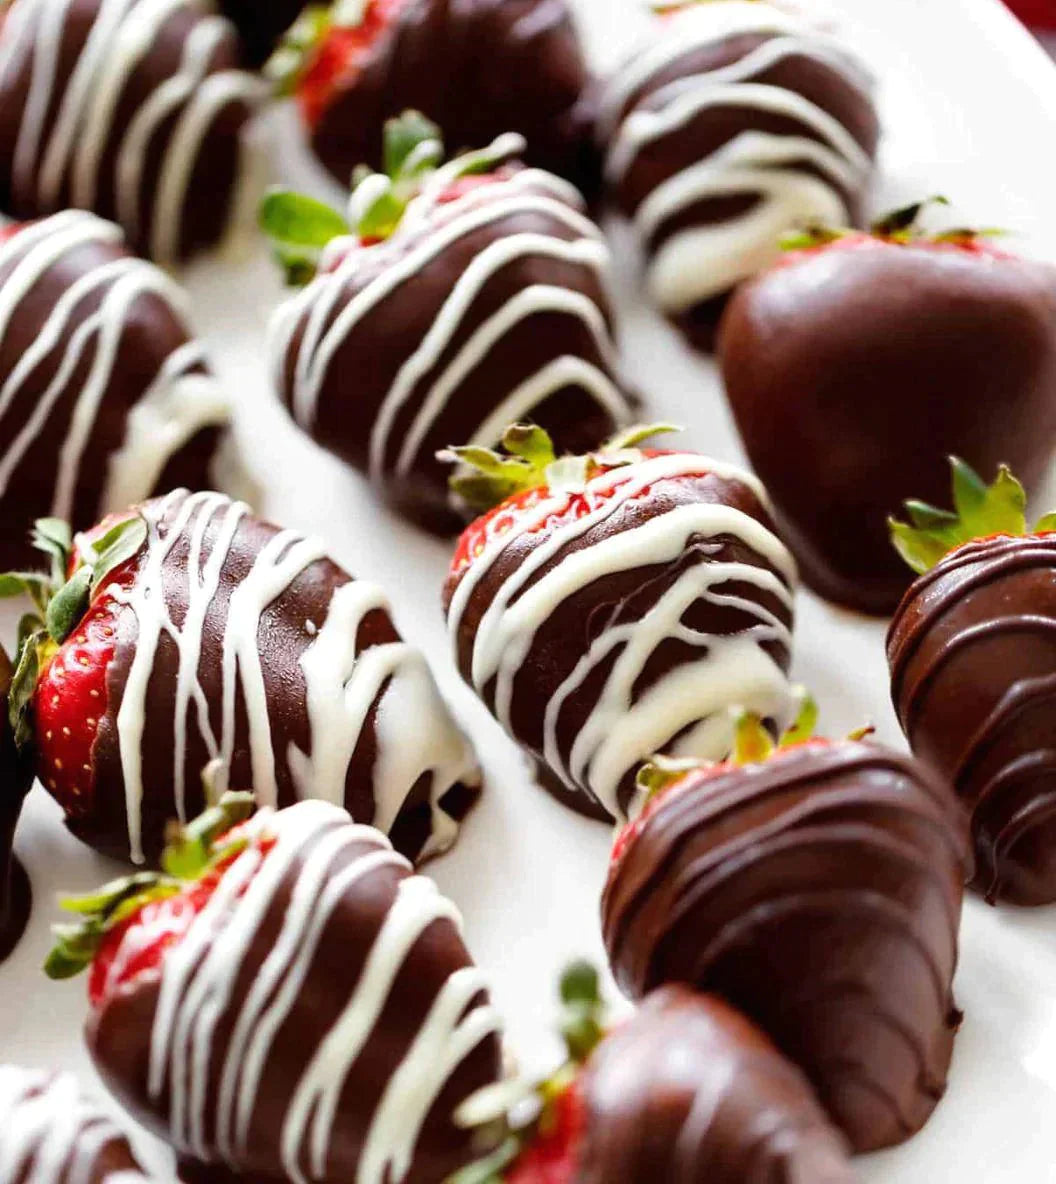 12 chocolate covered strawberries box, premium quality, milk, dark and white chocolate decoration.